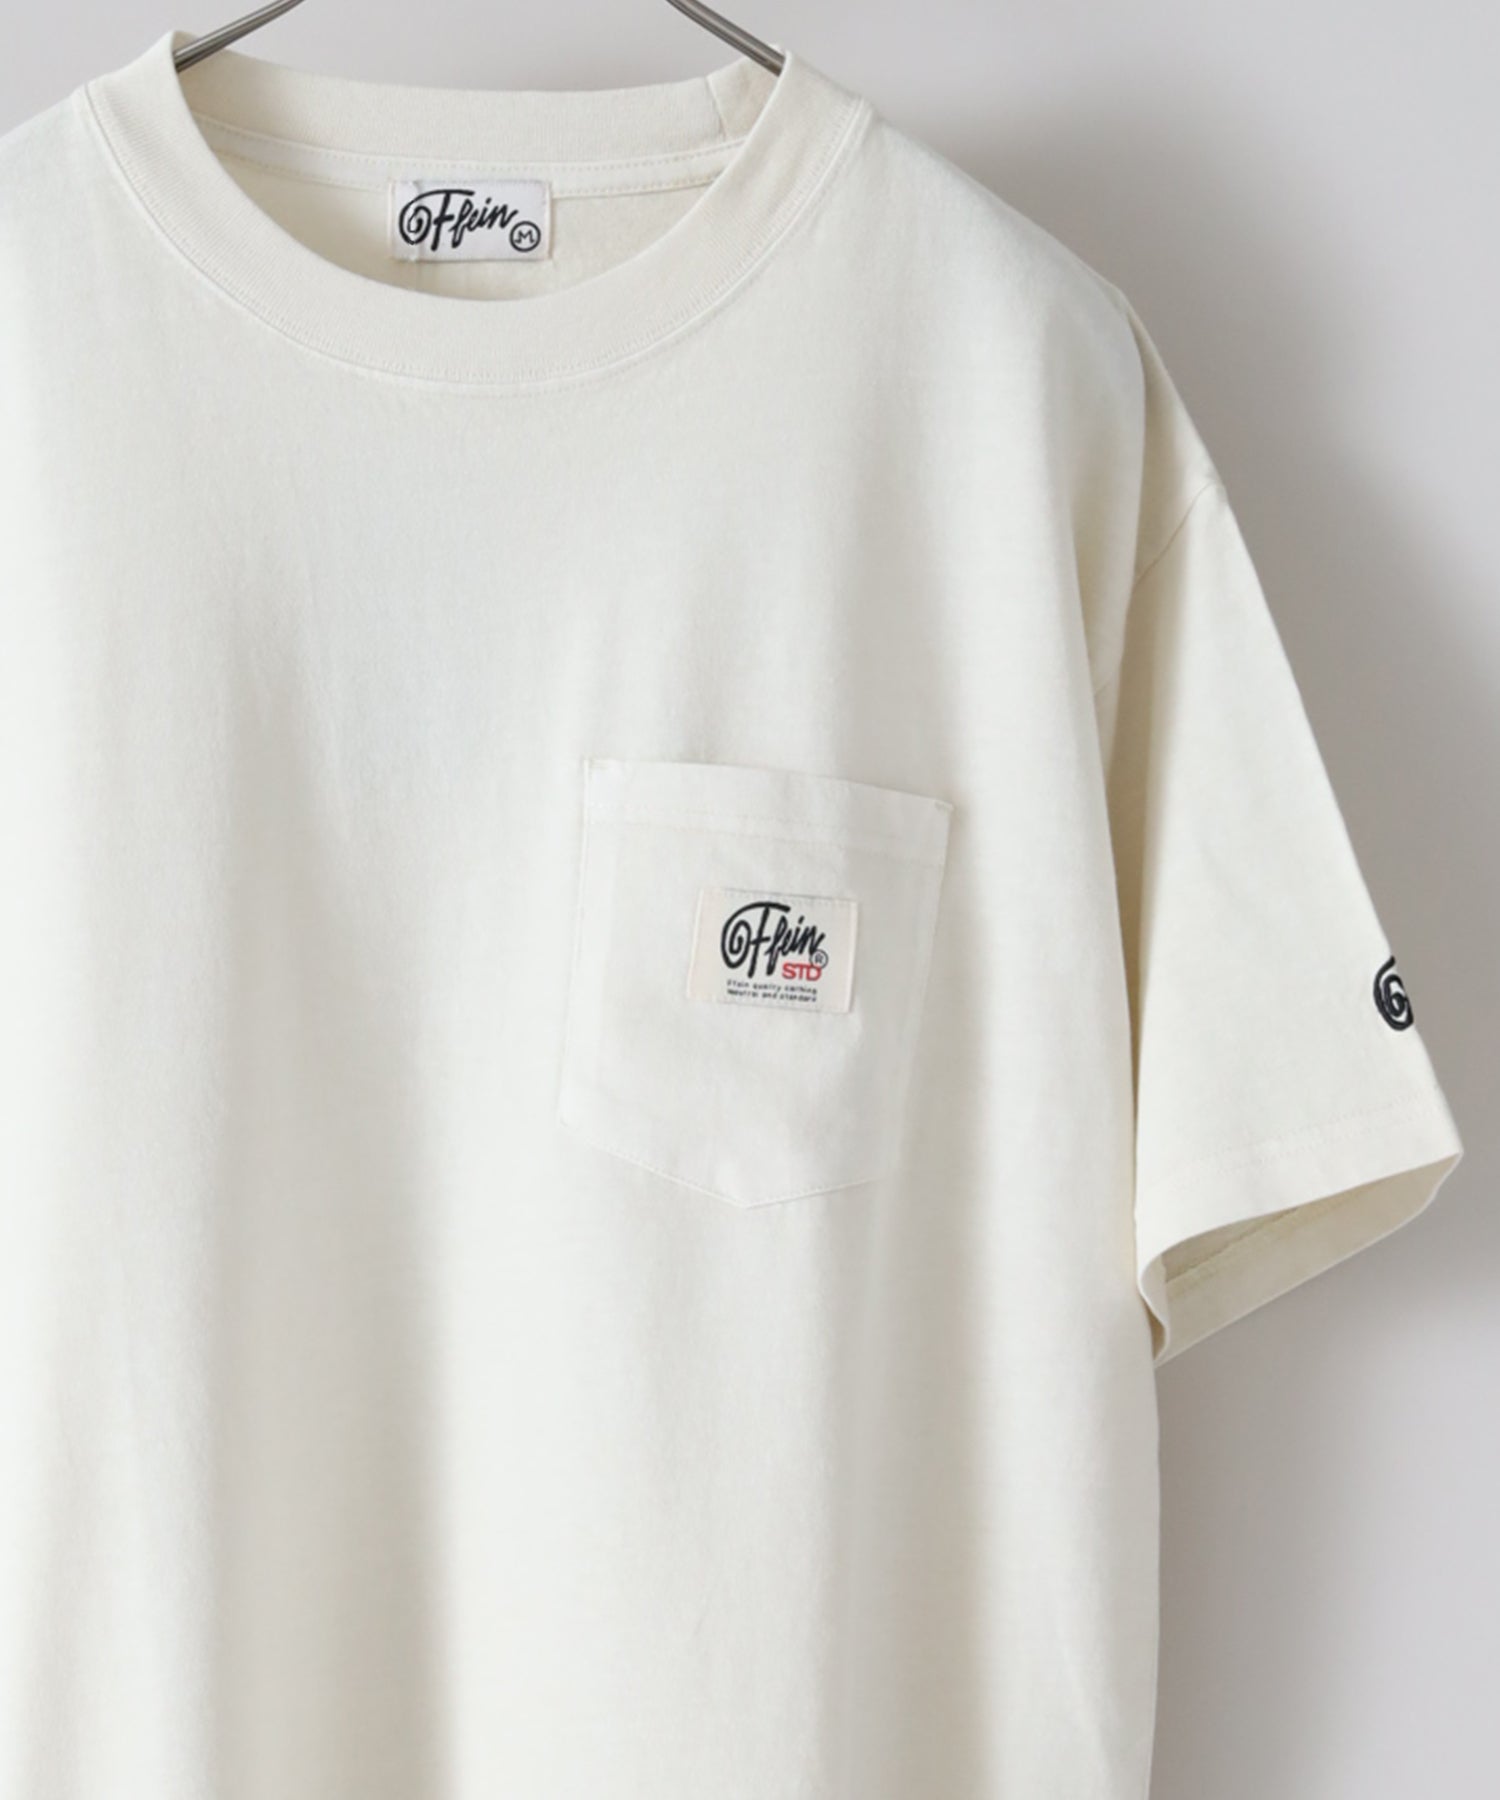 【希少カラー】ステューシー☆ワンポイント 刺繍ロゴ ポケット 半袖 Tシャツ M